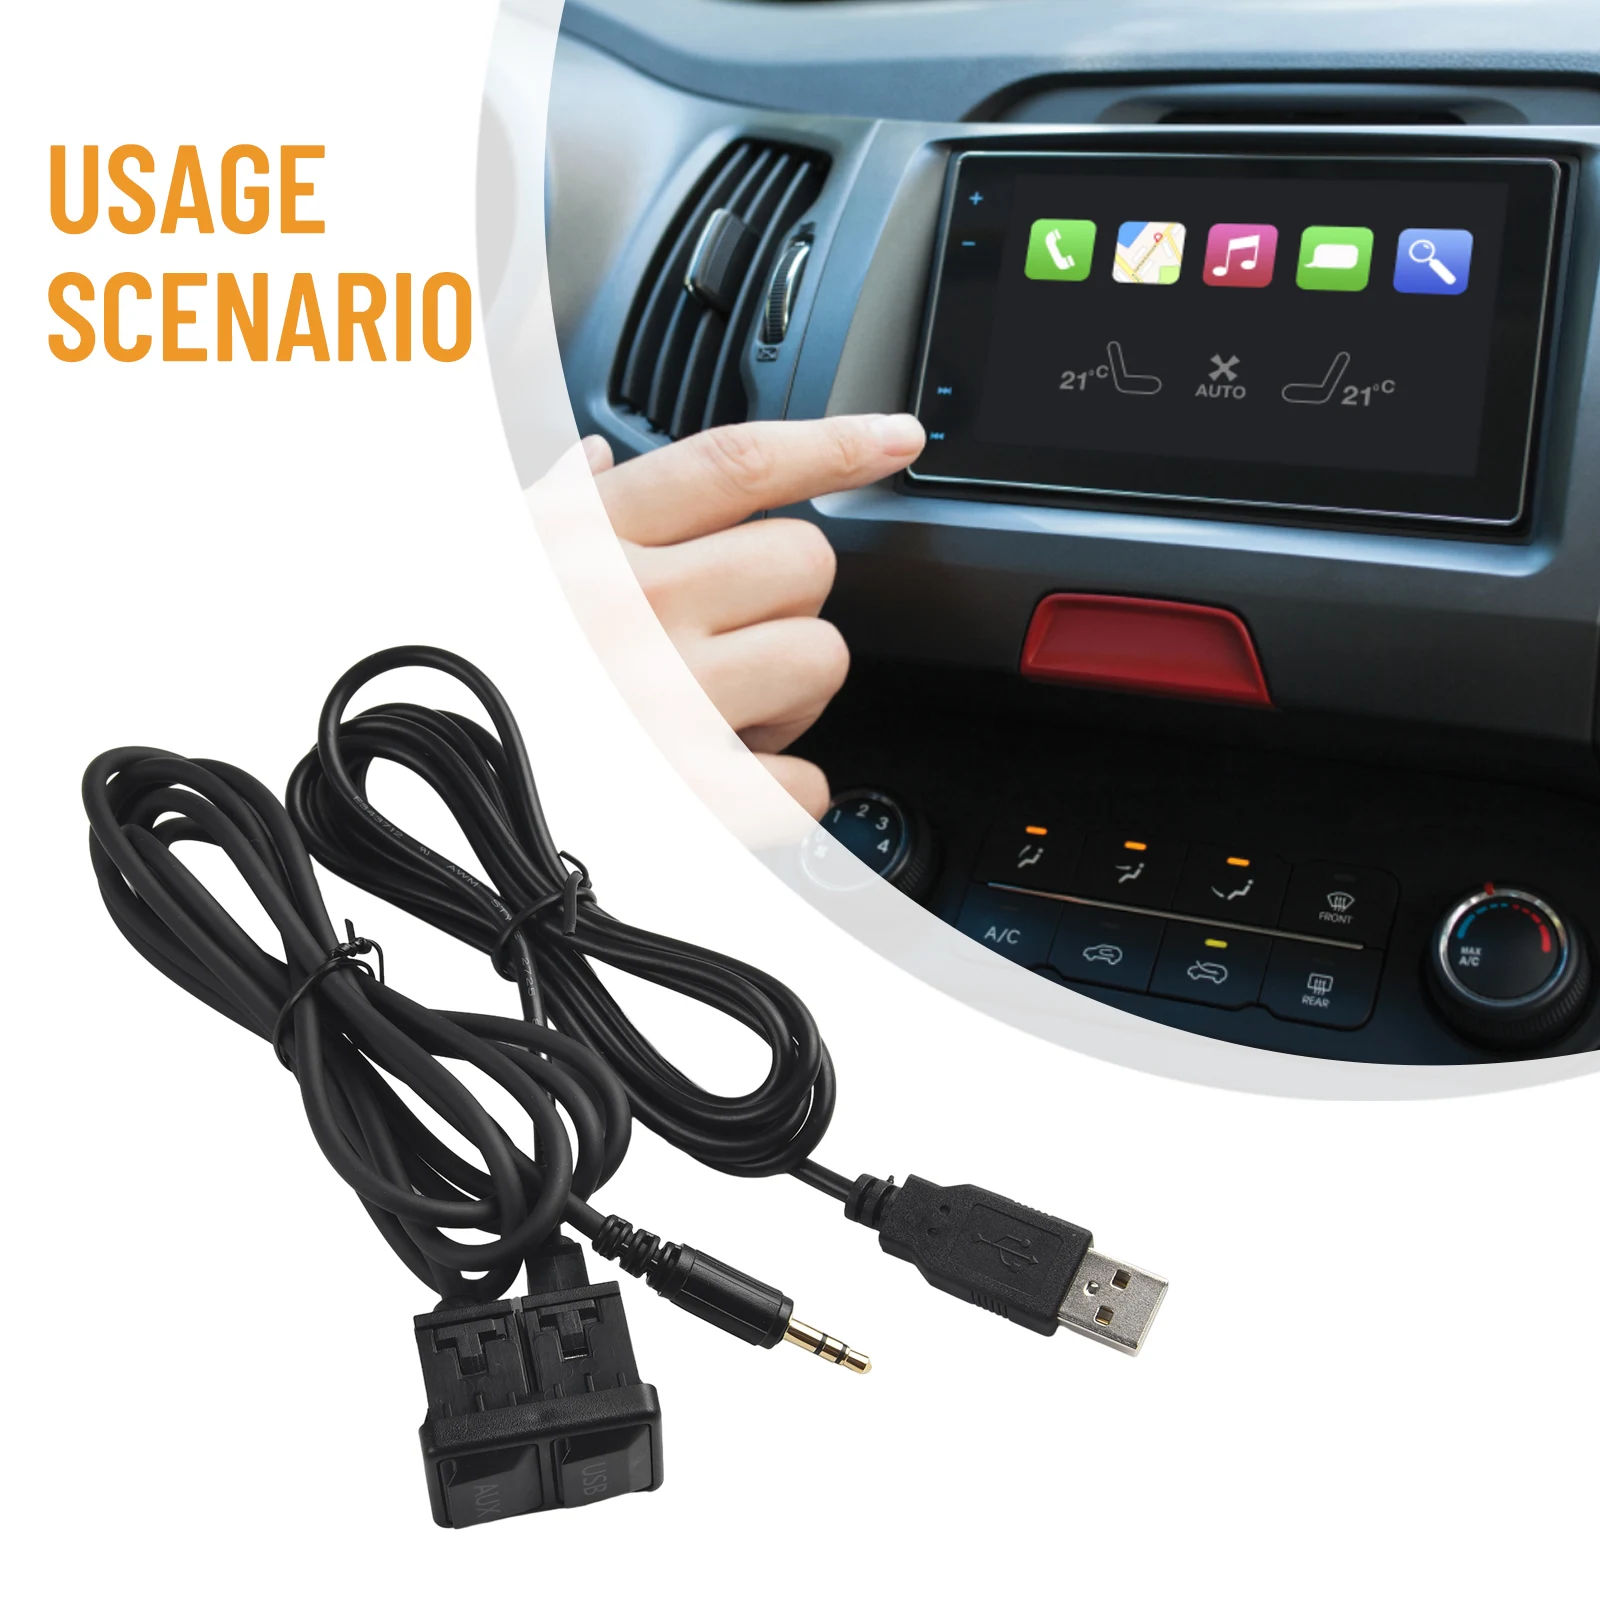 

AUX Cable Car USB AUX Adapter Car Accessories 3.4*2.3CM Black Dash Flush Mount Extension Plastic USB Universal